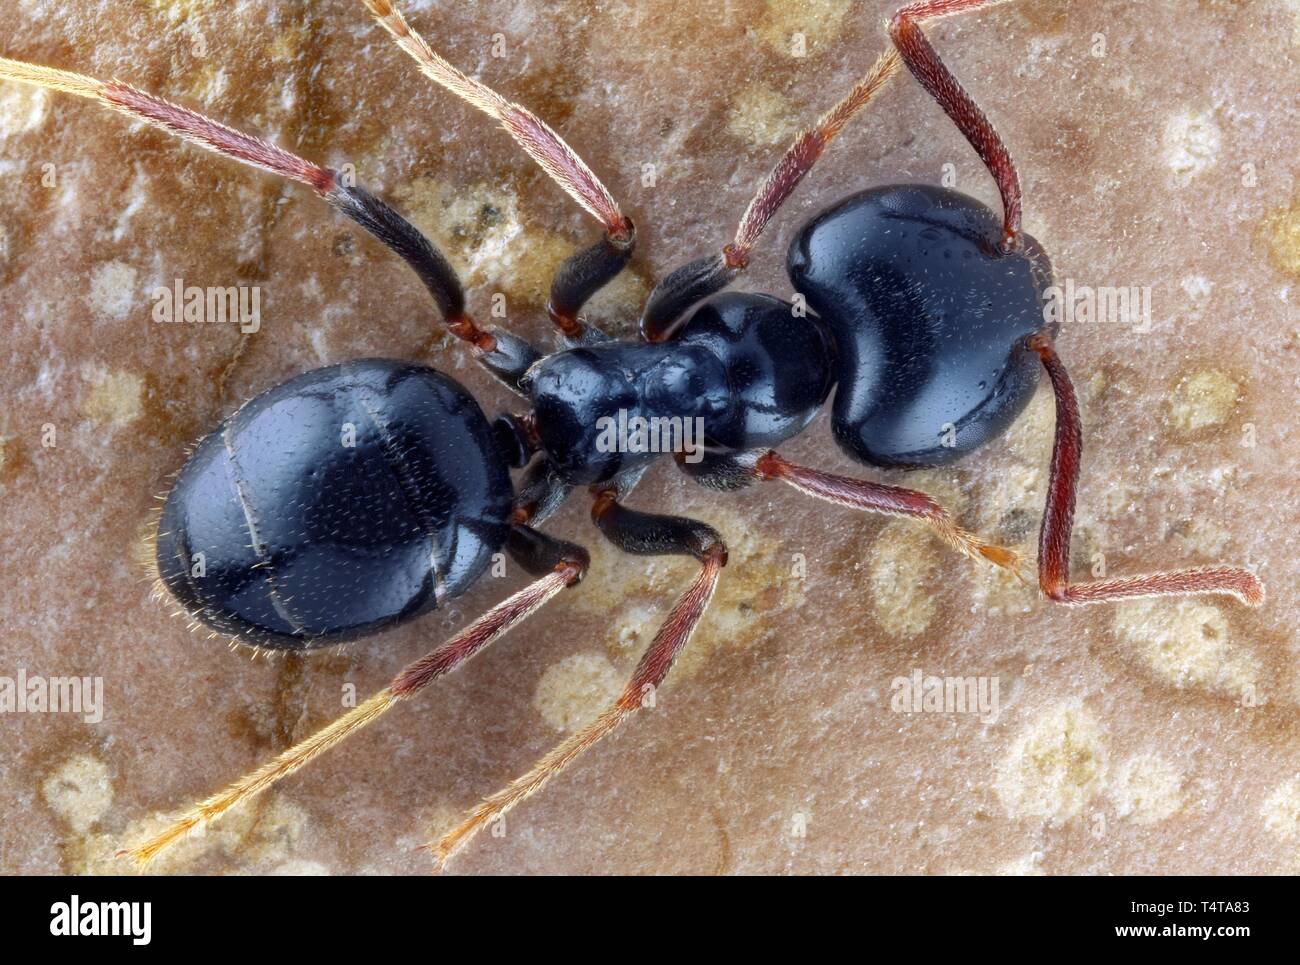 carpenter ant (Camponotus) Stock Photo